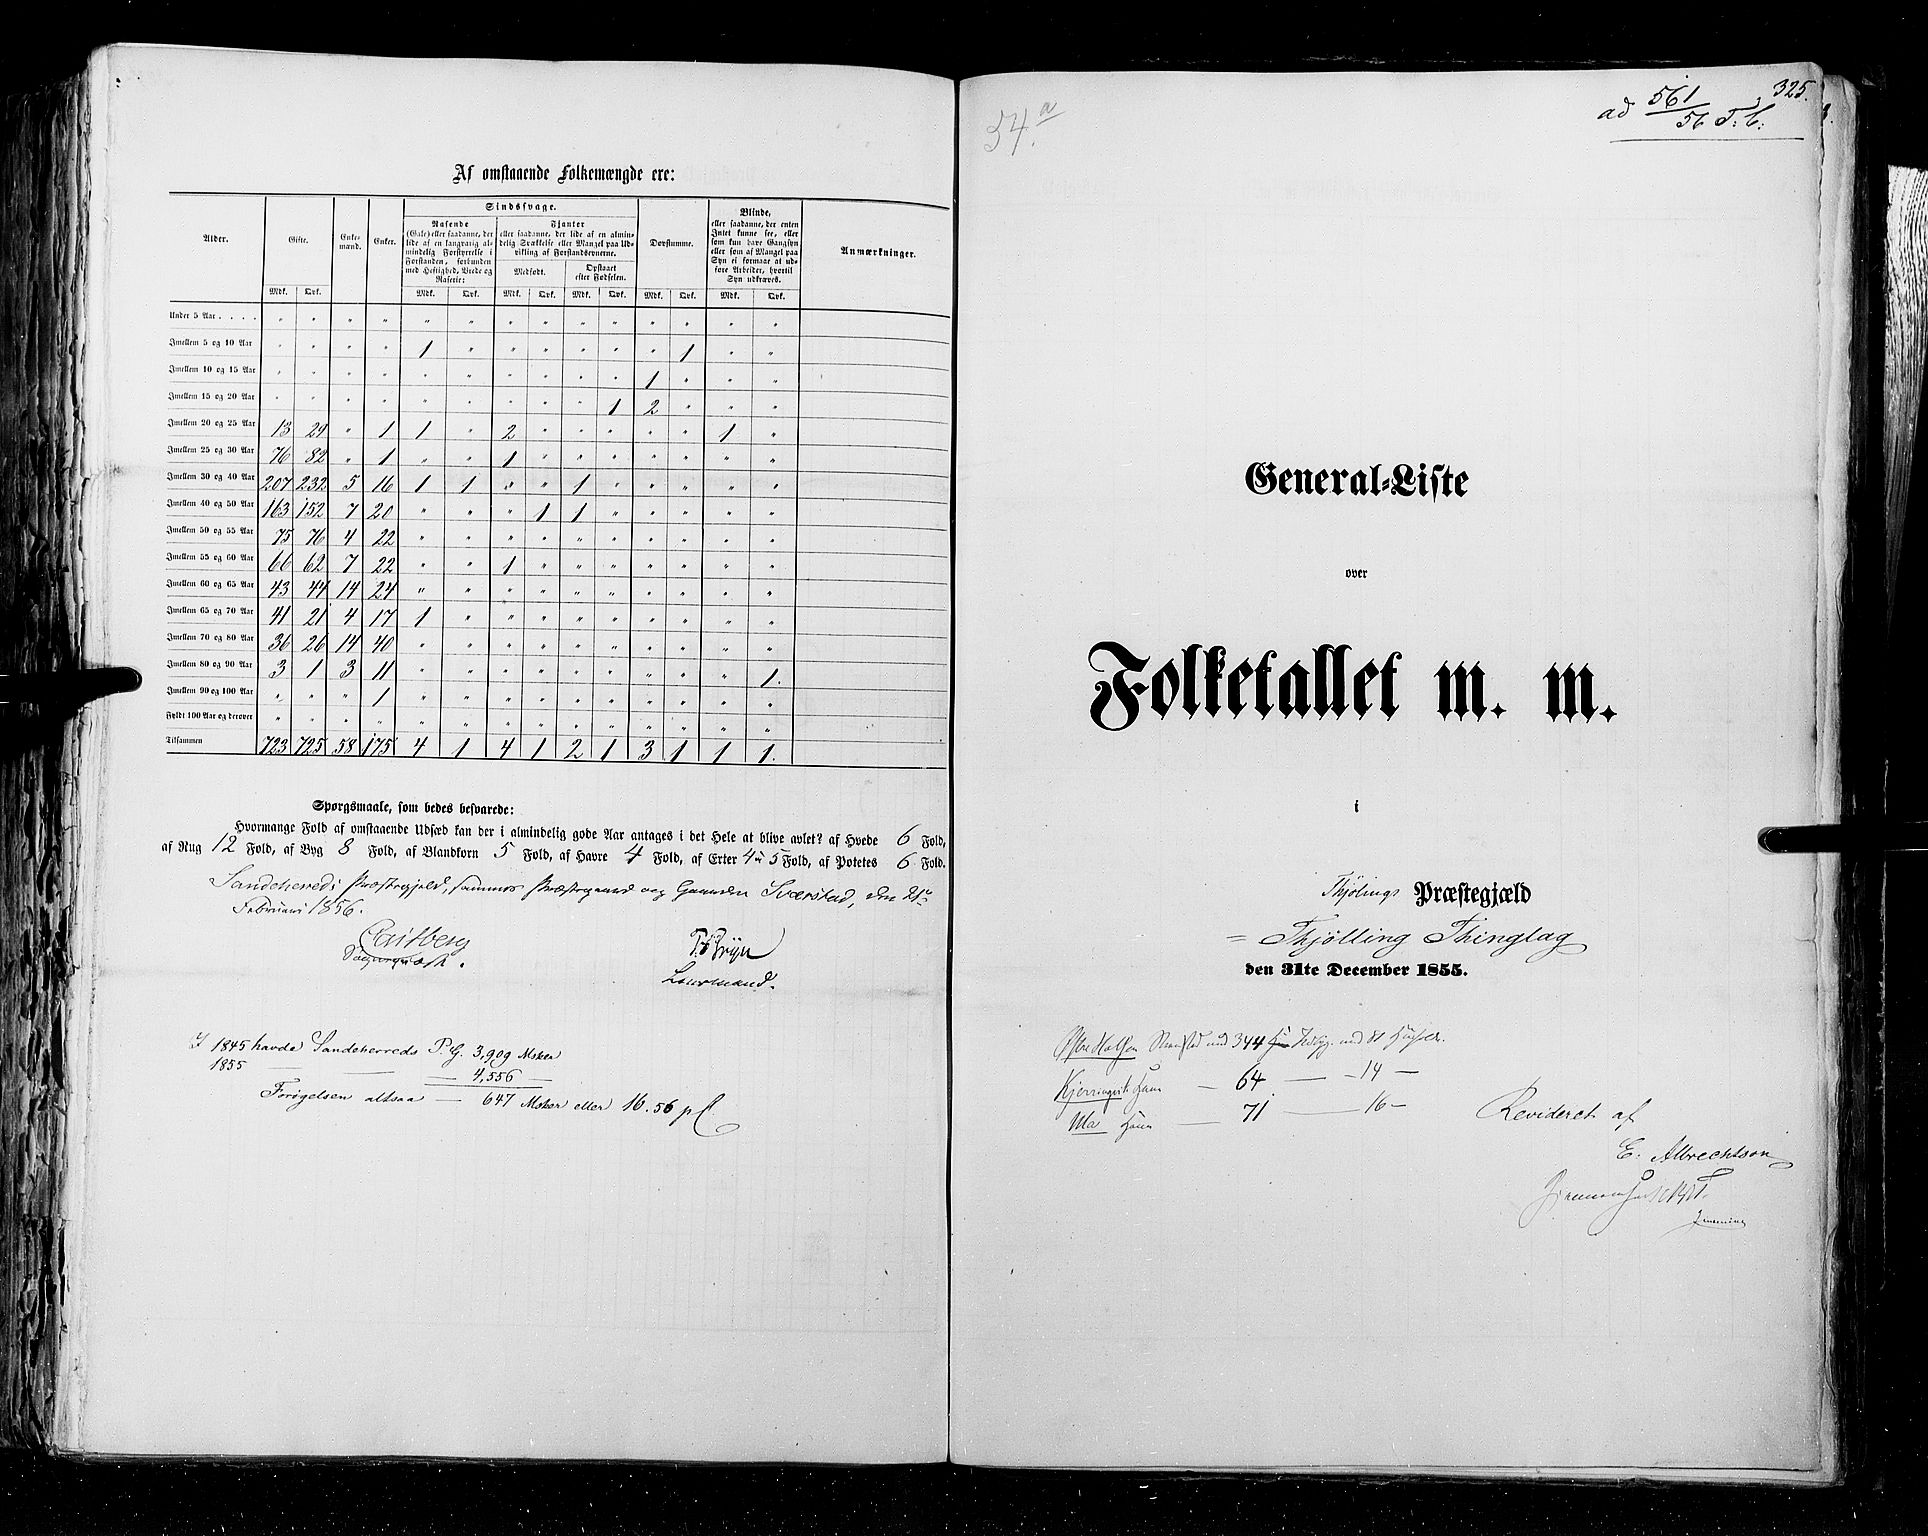 RA, Census 1855, vol. 2: Kristians amt, Buskerud amt og Jarlsberg og Larvik amt, 1855, p. 325